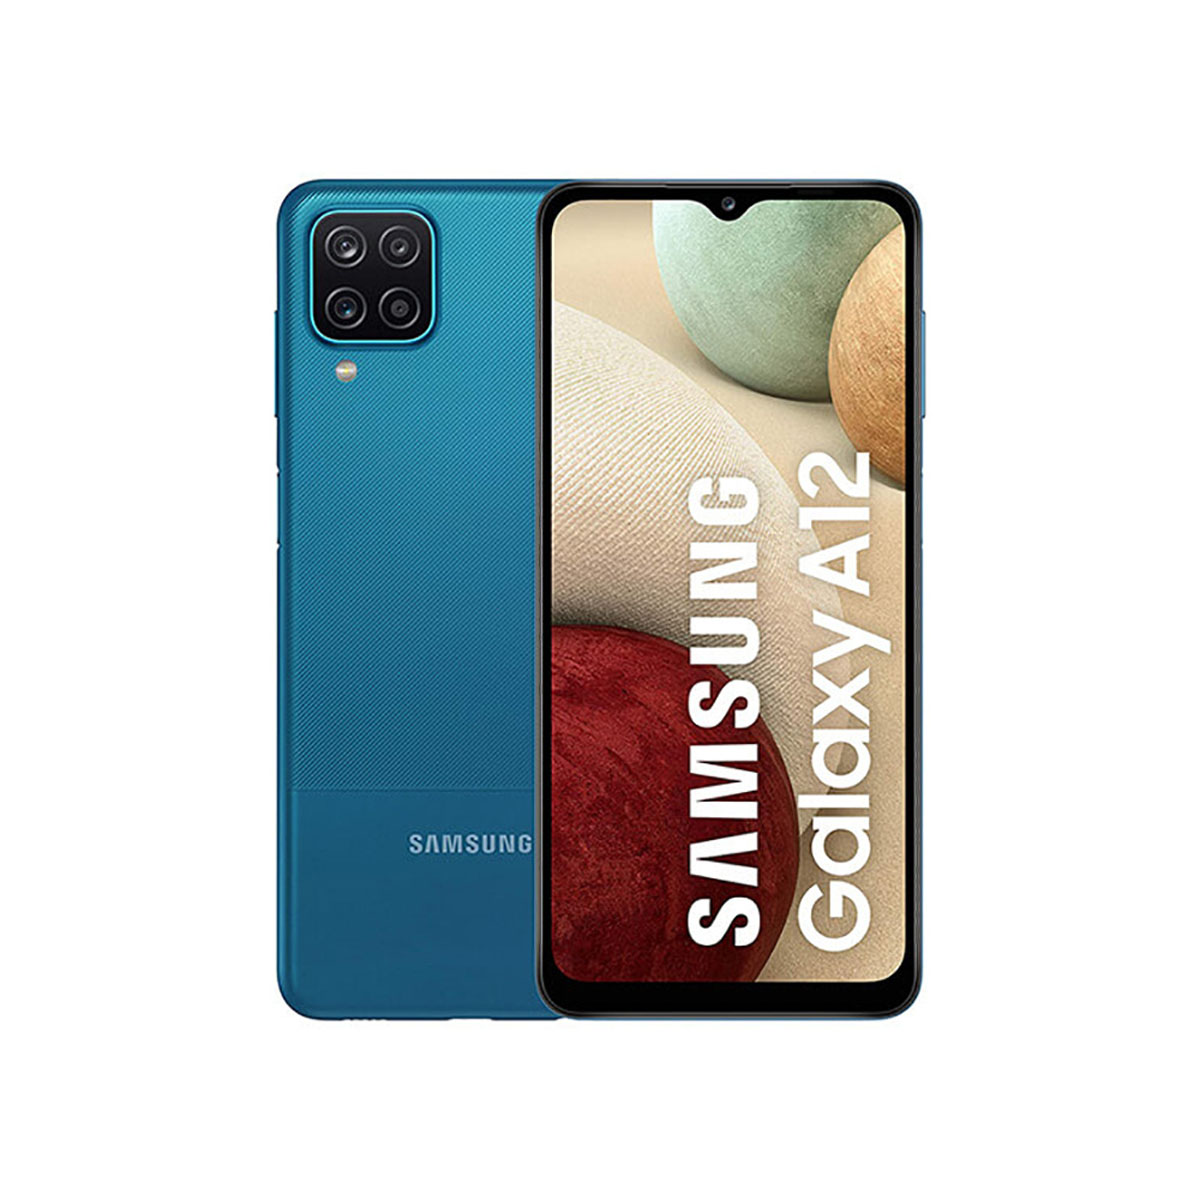 SAMSUNG GALAXY A12 3GB/32GB AZUL (BLUE) DUAL SIM SIN NFC A125F DESPRECINTADO